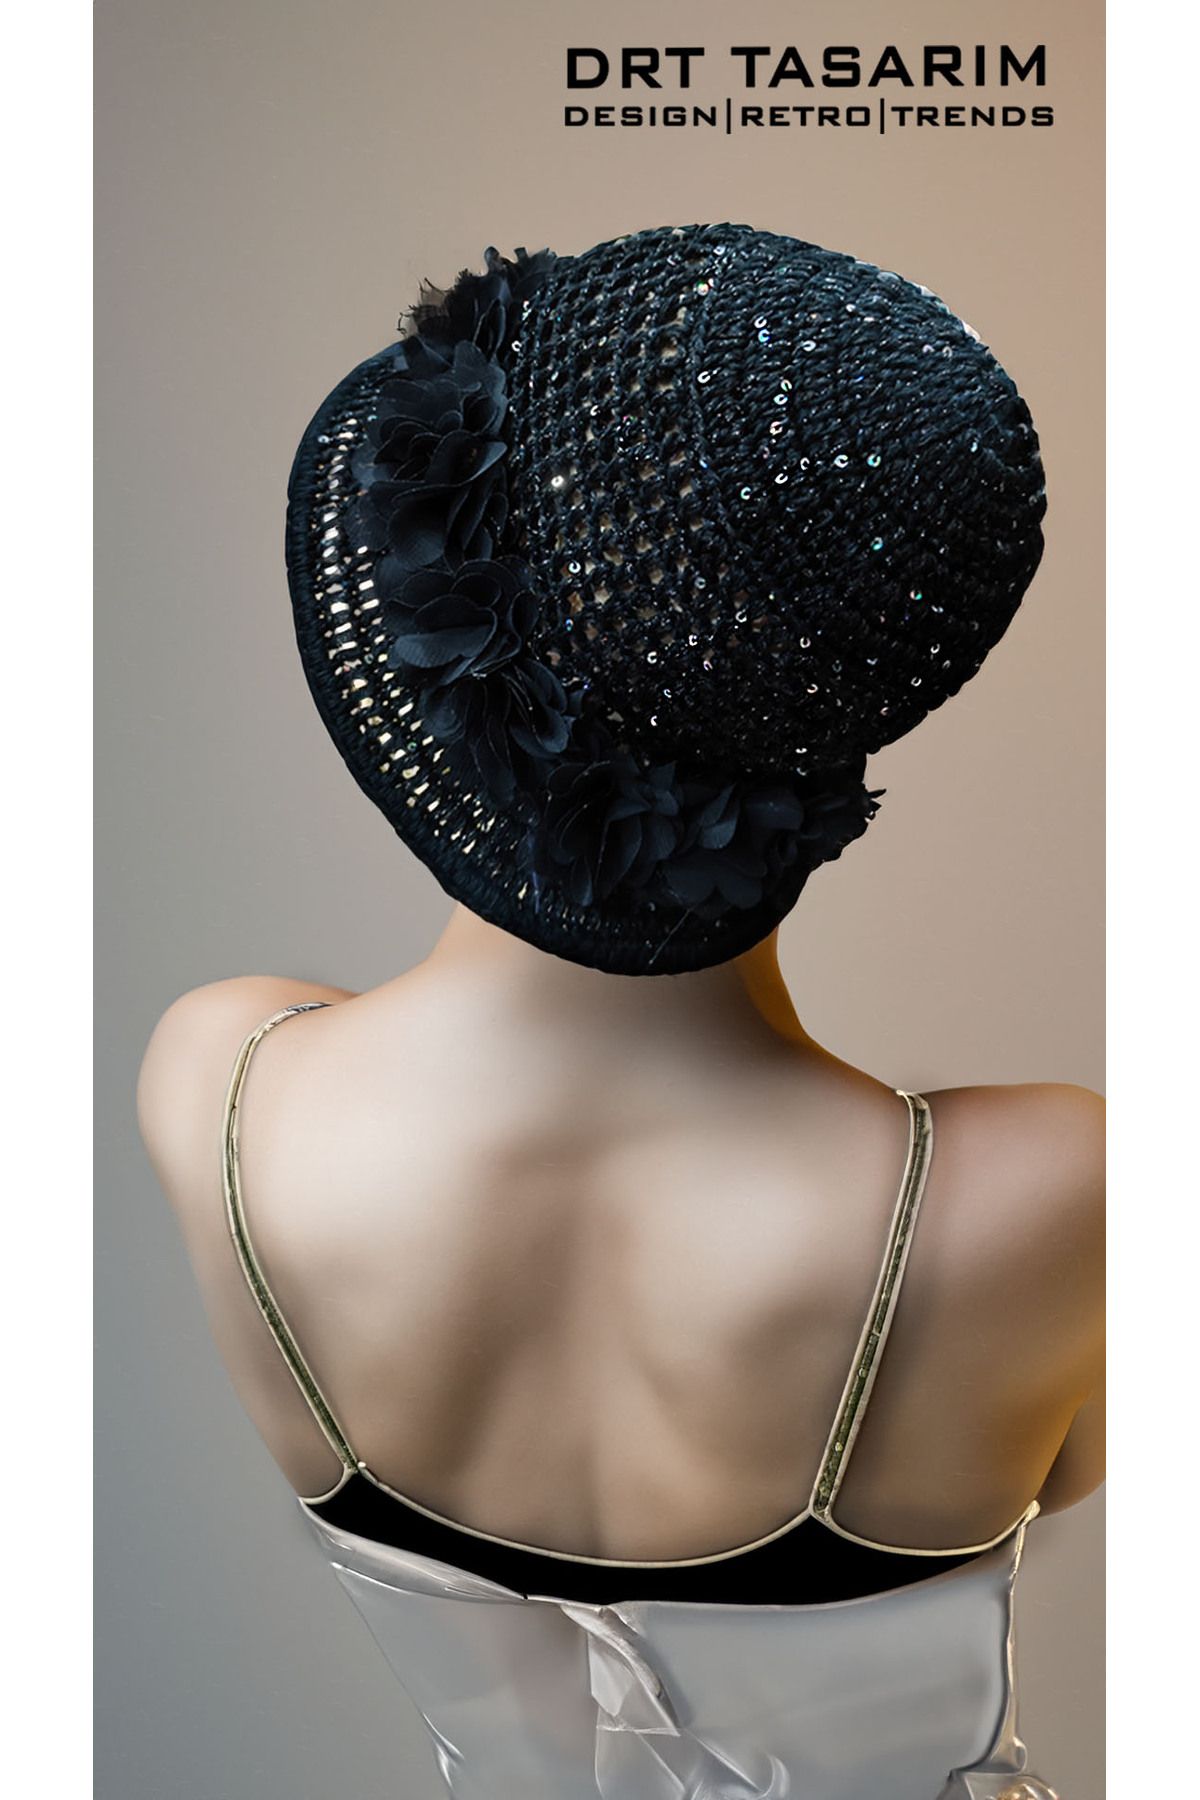 drt tasarım El Örgüsü Koton Siyah Çiçek Süslemeli Payetli Kadın Kloş Şapka